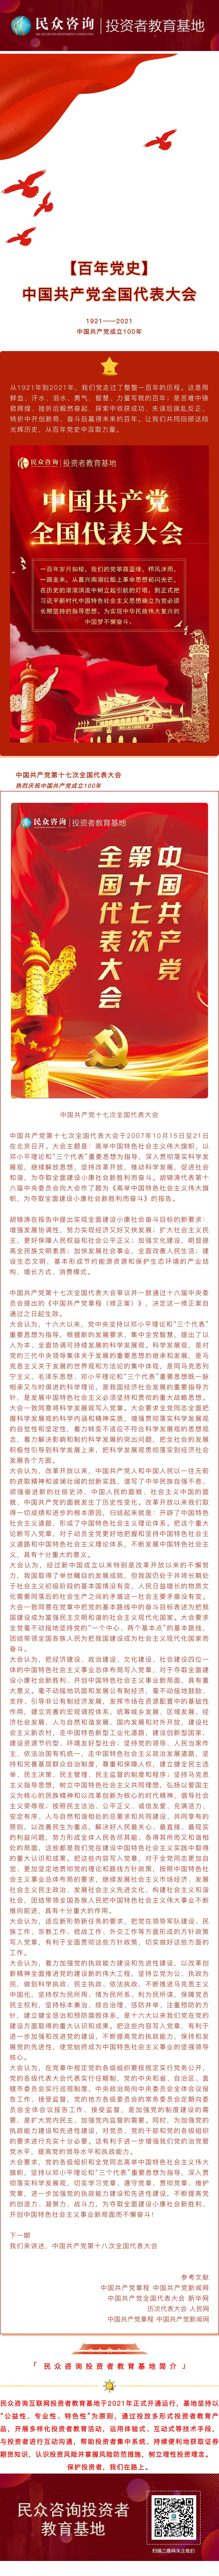 【百年党史】中国共产党第十七次全国代表大会.jpg